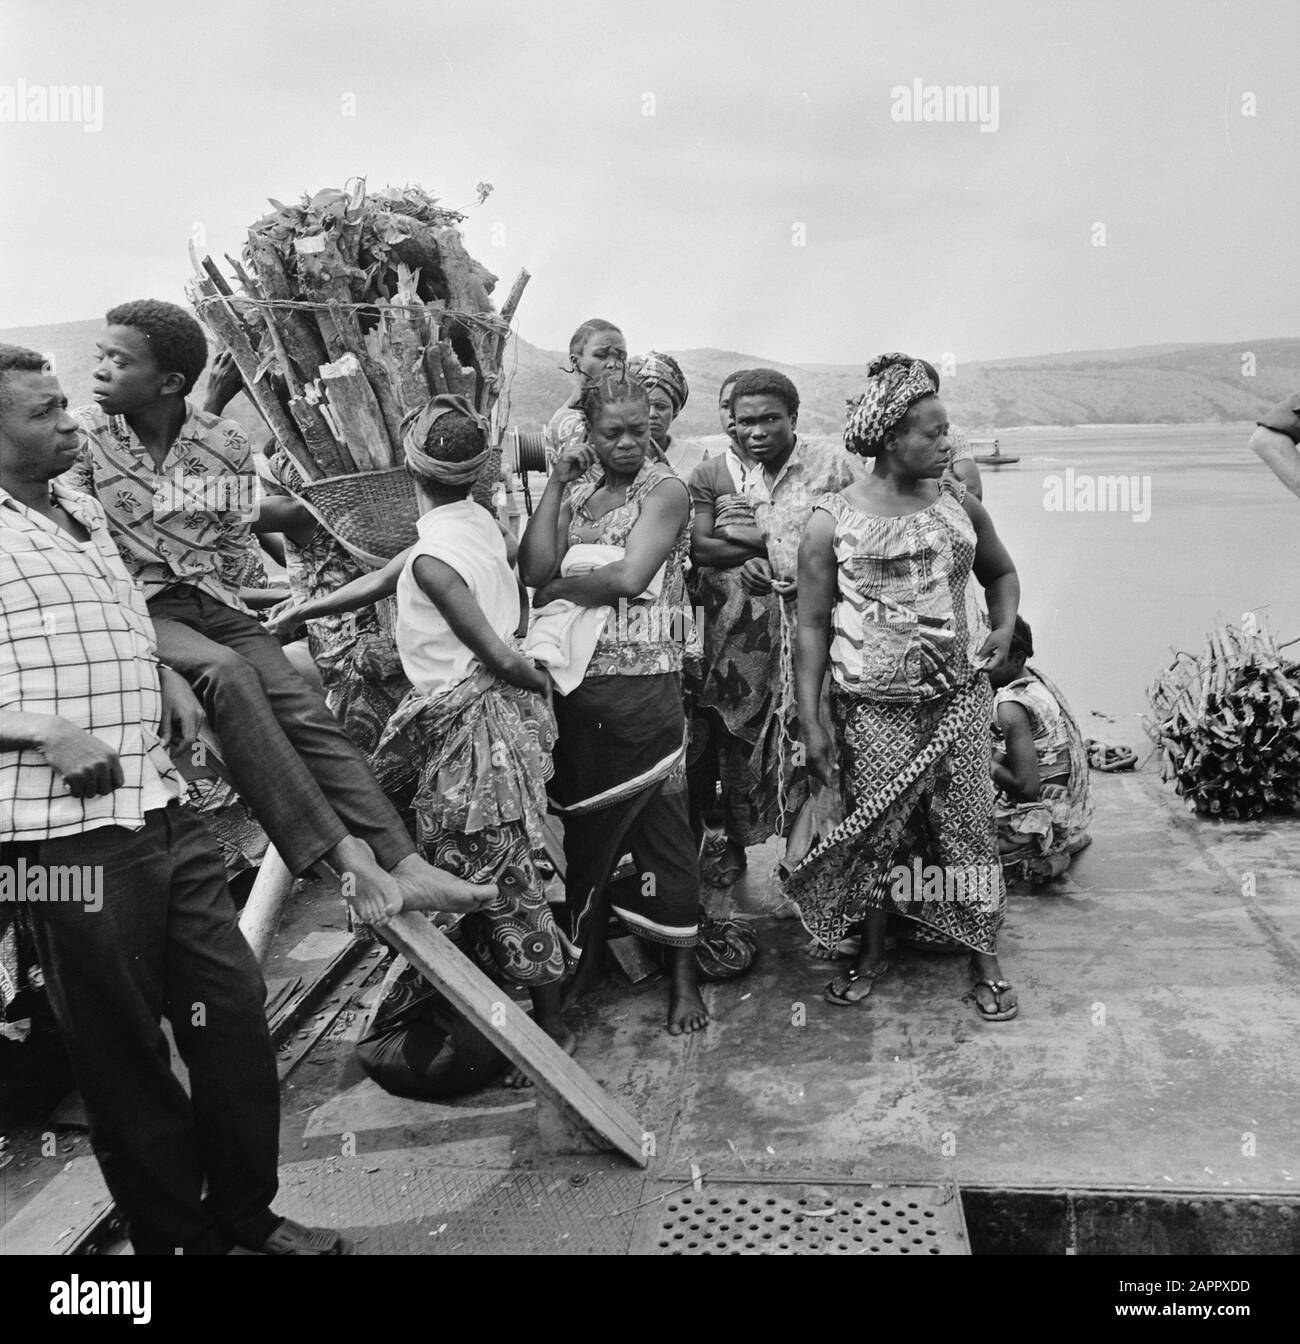 Zaire (ehemals Belgischer Kongo) Leben auf dem Land Datum: 24. Oktober 1973 Ort: Kongo, Zaire Schlüsselwörter: Dorfleben Stockfoto